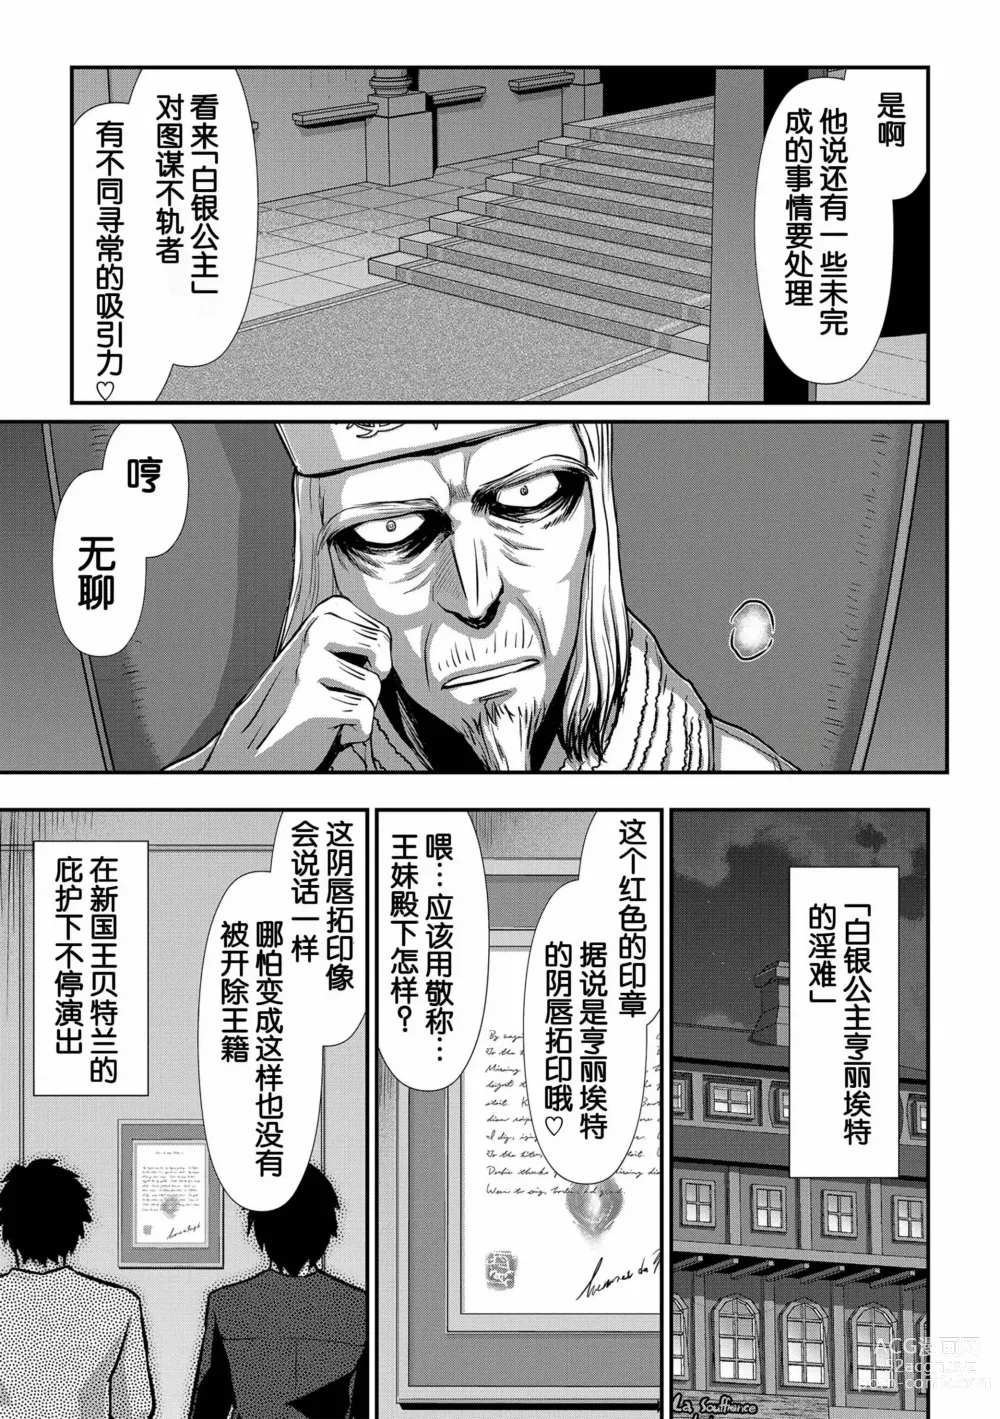 Page 189 of manga Hakugin Hime Henriette no Innan ~Tensai Gunshi no Otoshikata~